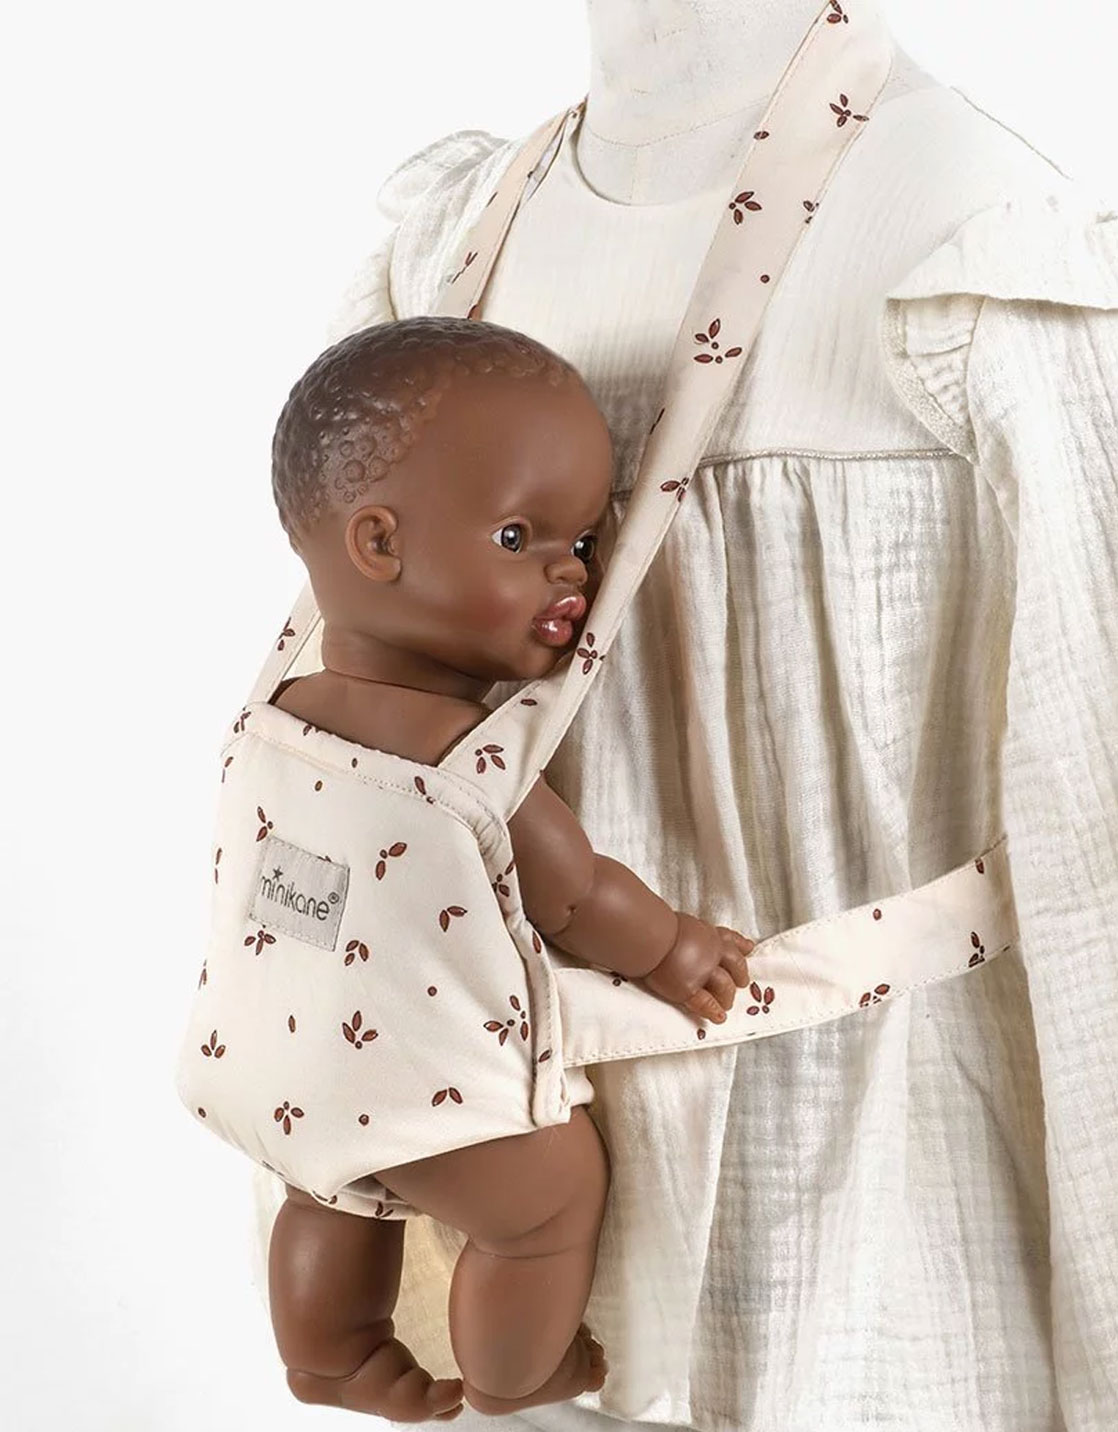 Porte-bébé rose végétal pour porter les poupées, Minikane